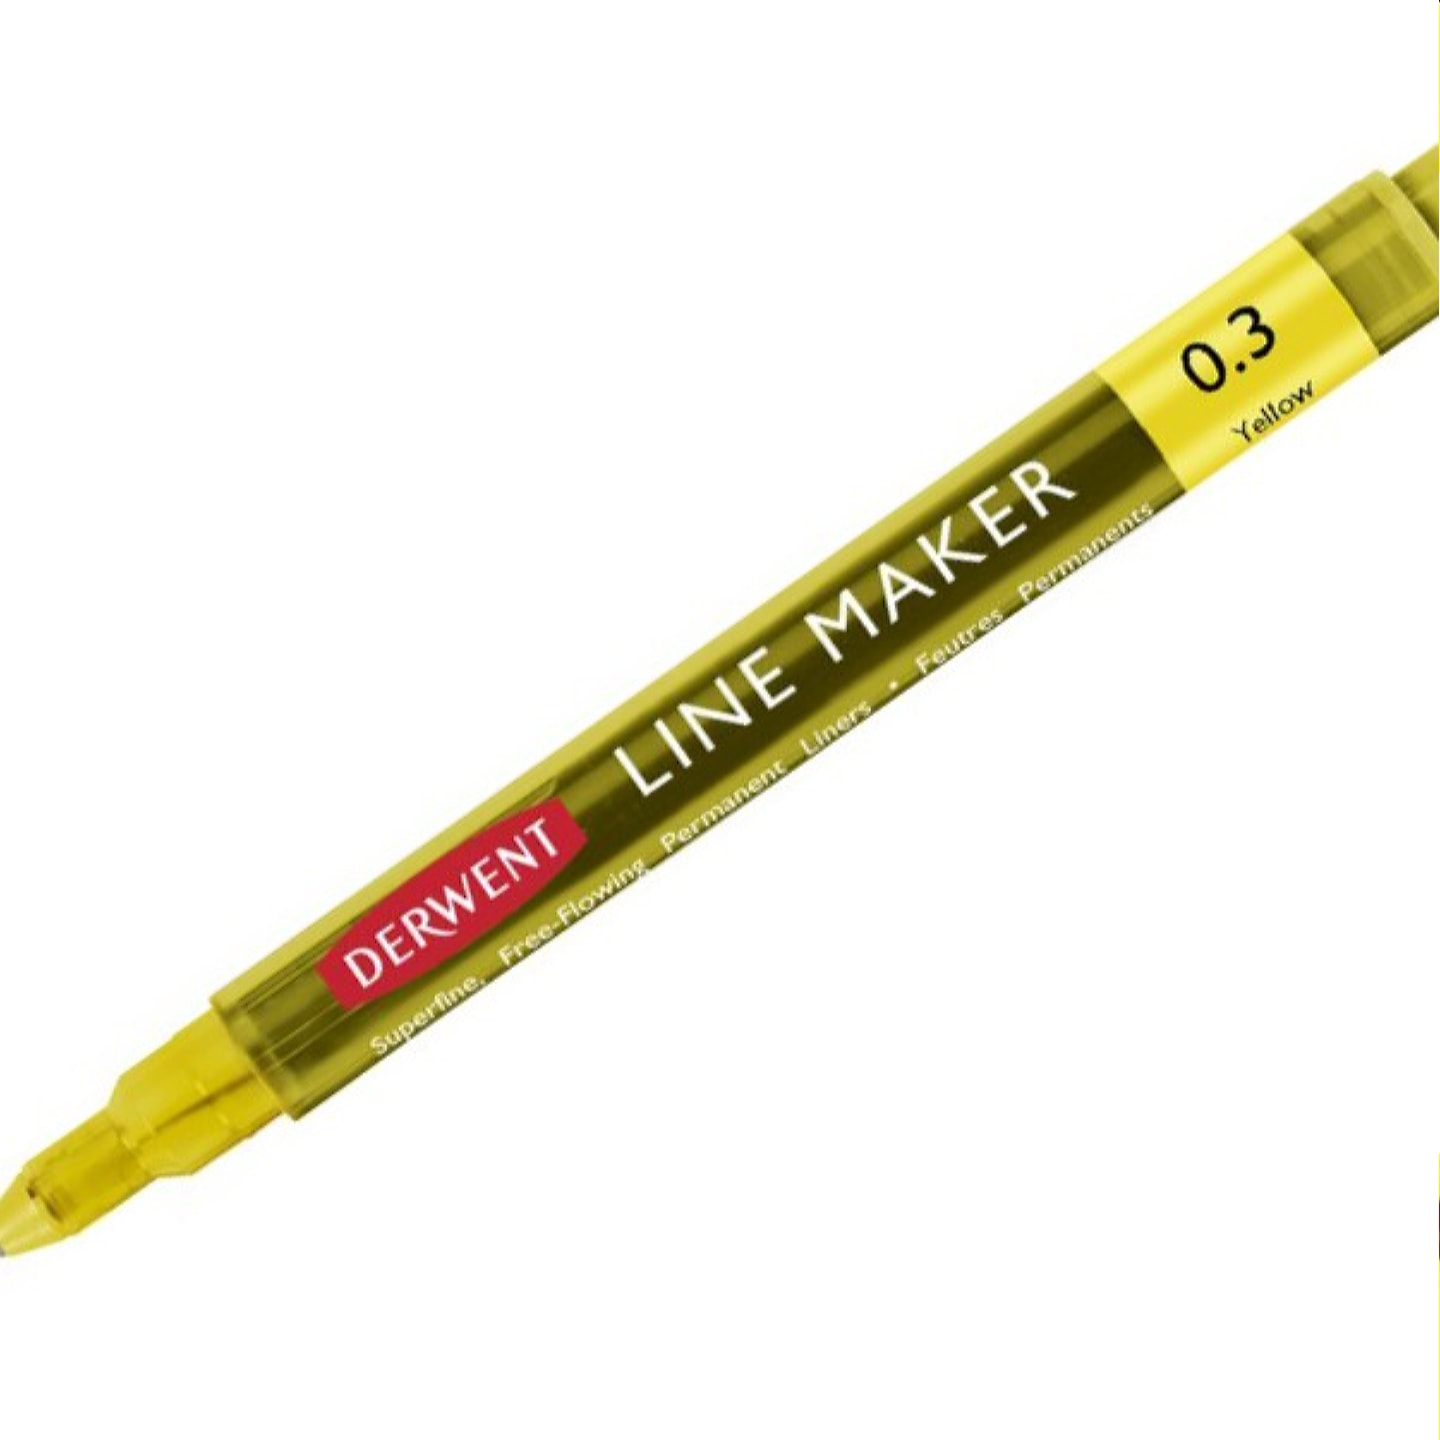 Ручка капиллярная Graphik Line Maker 0,3мм 10 шт/упак 6 цветов в ассортименте